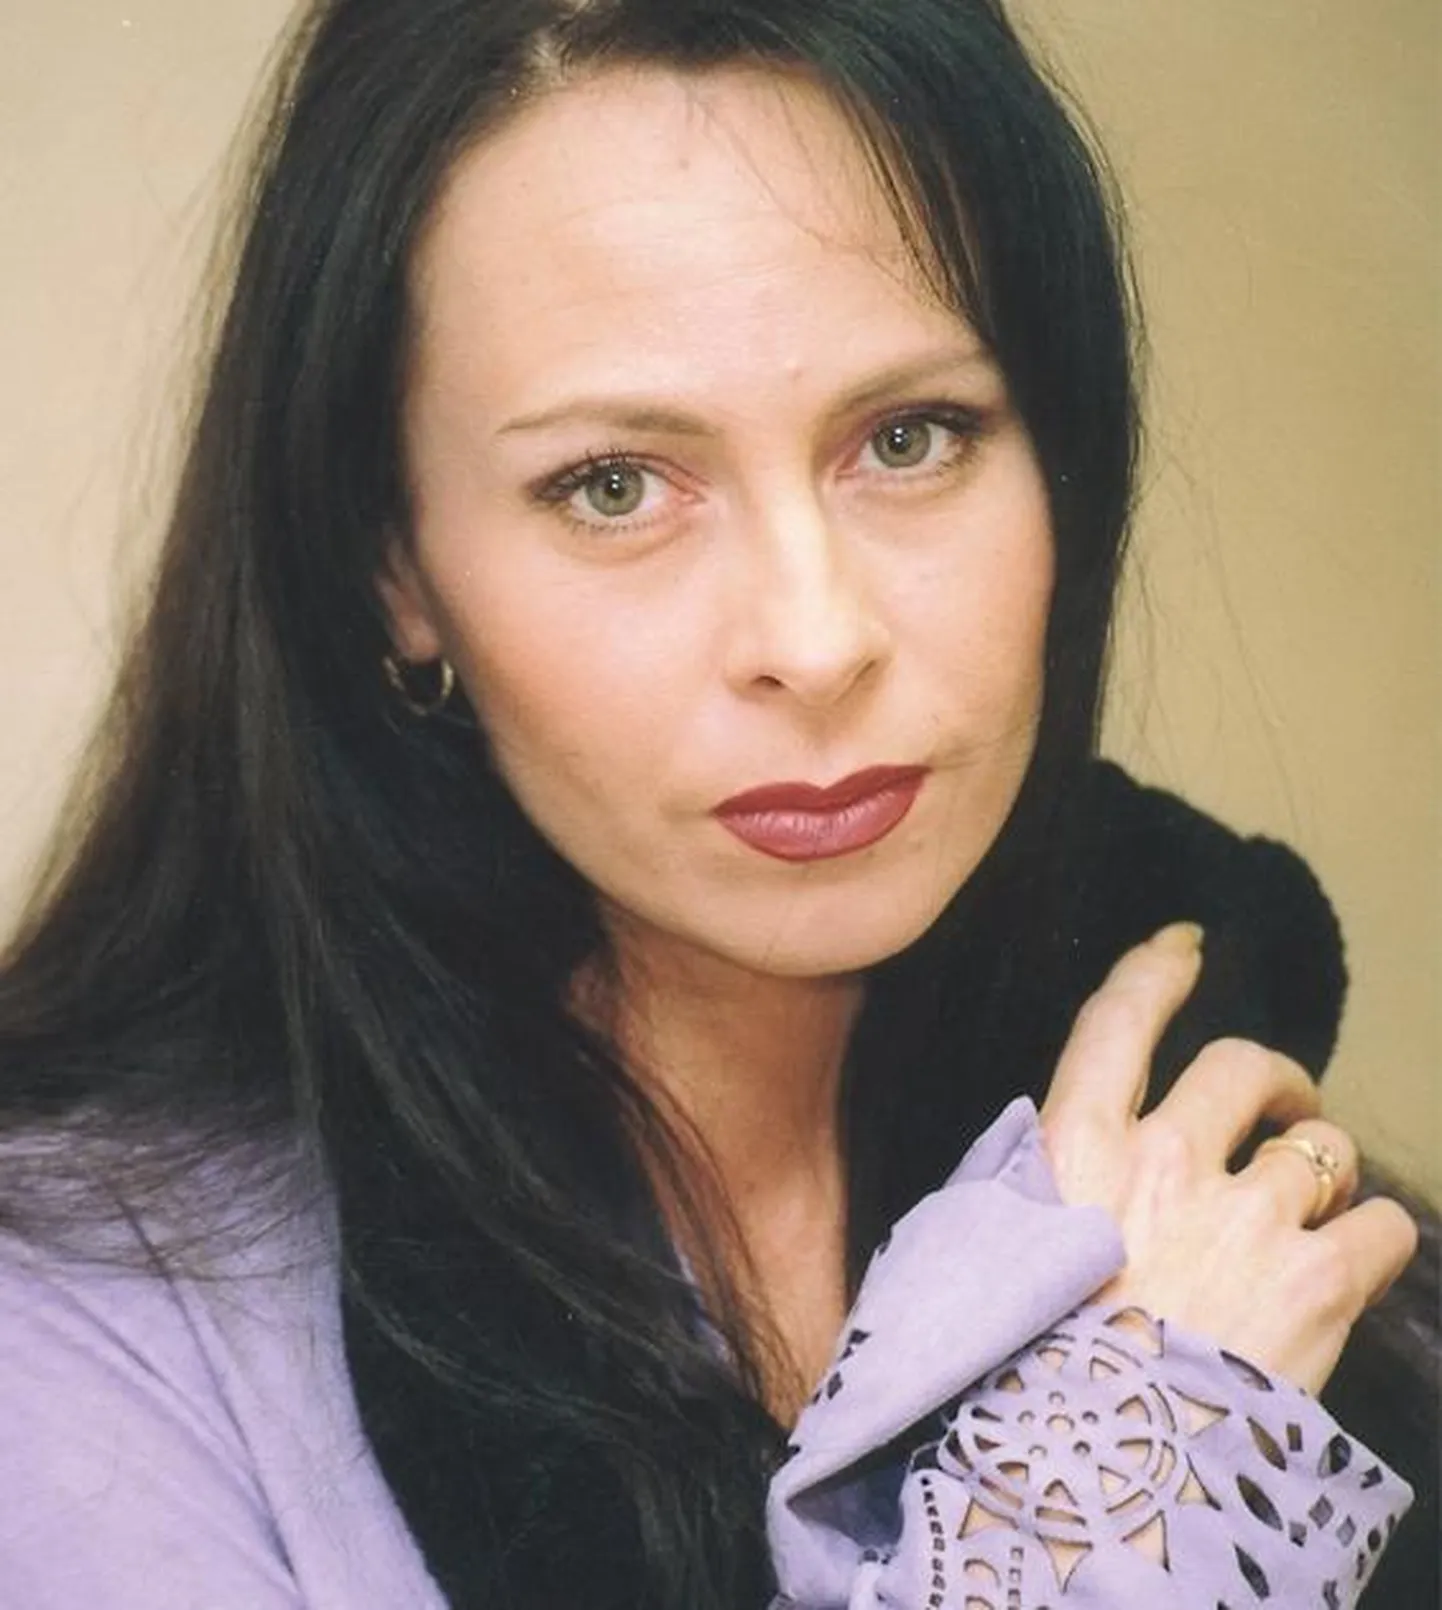 Марина Хлебникова